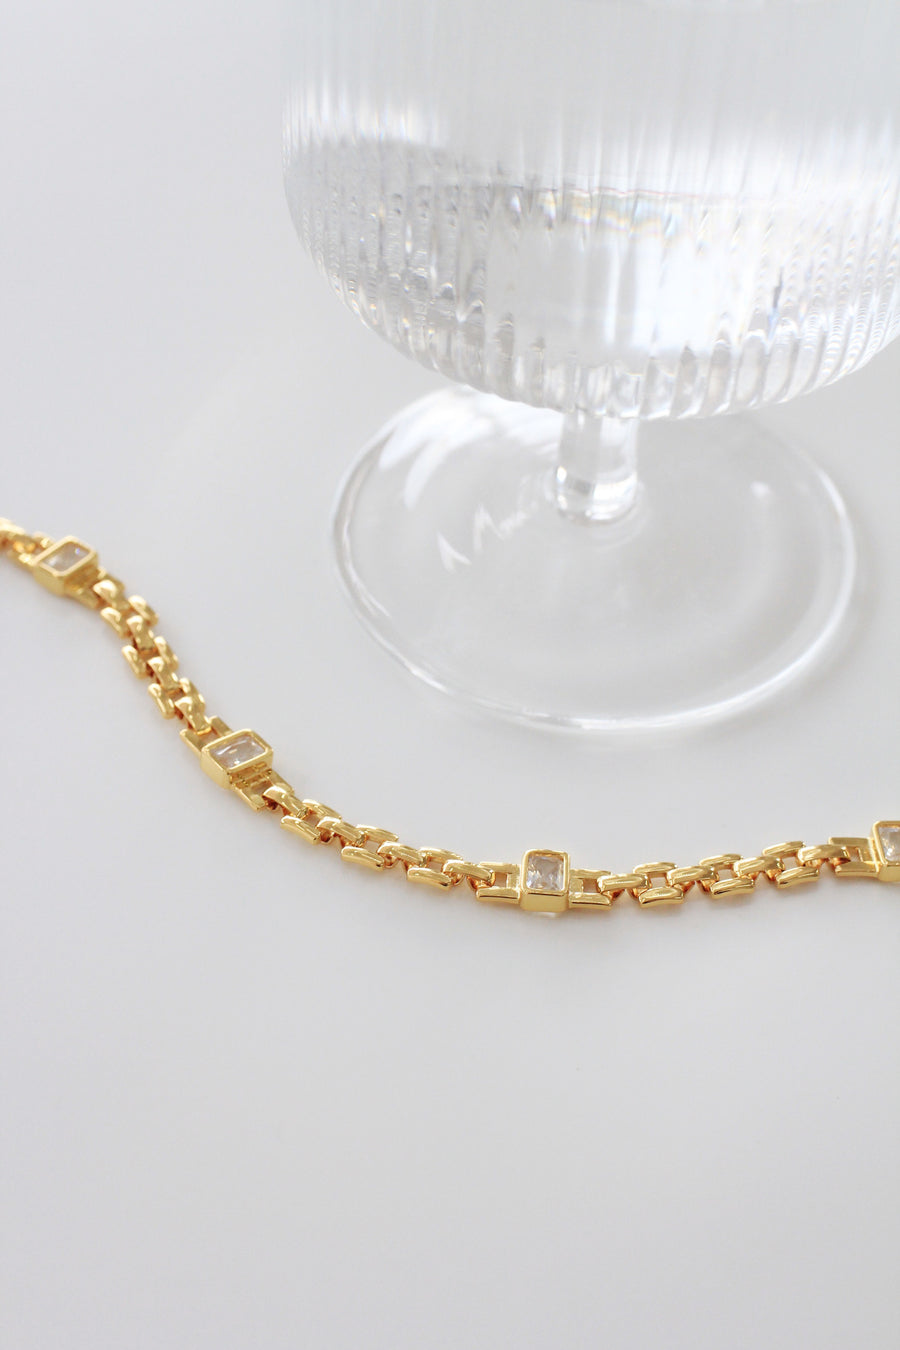 Jaxon Gold Link Bracelet